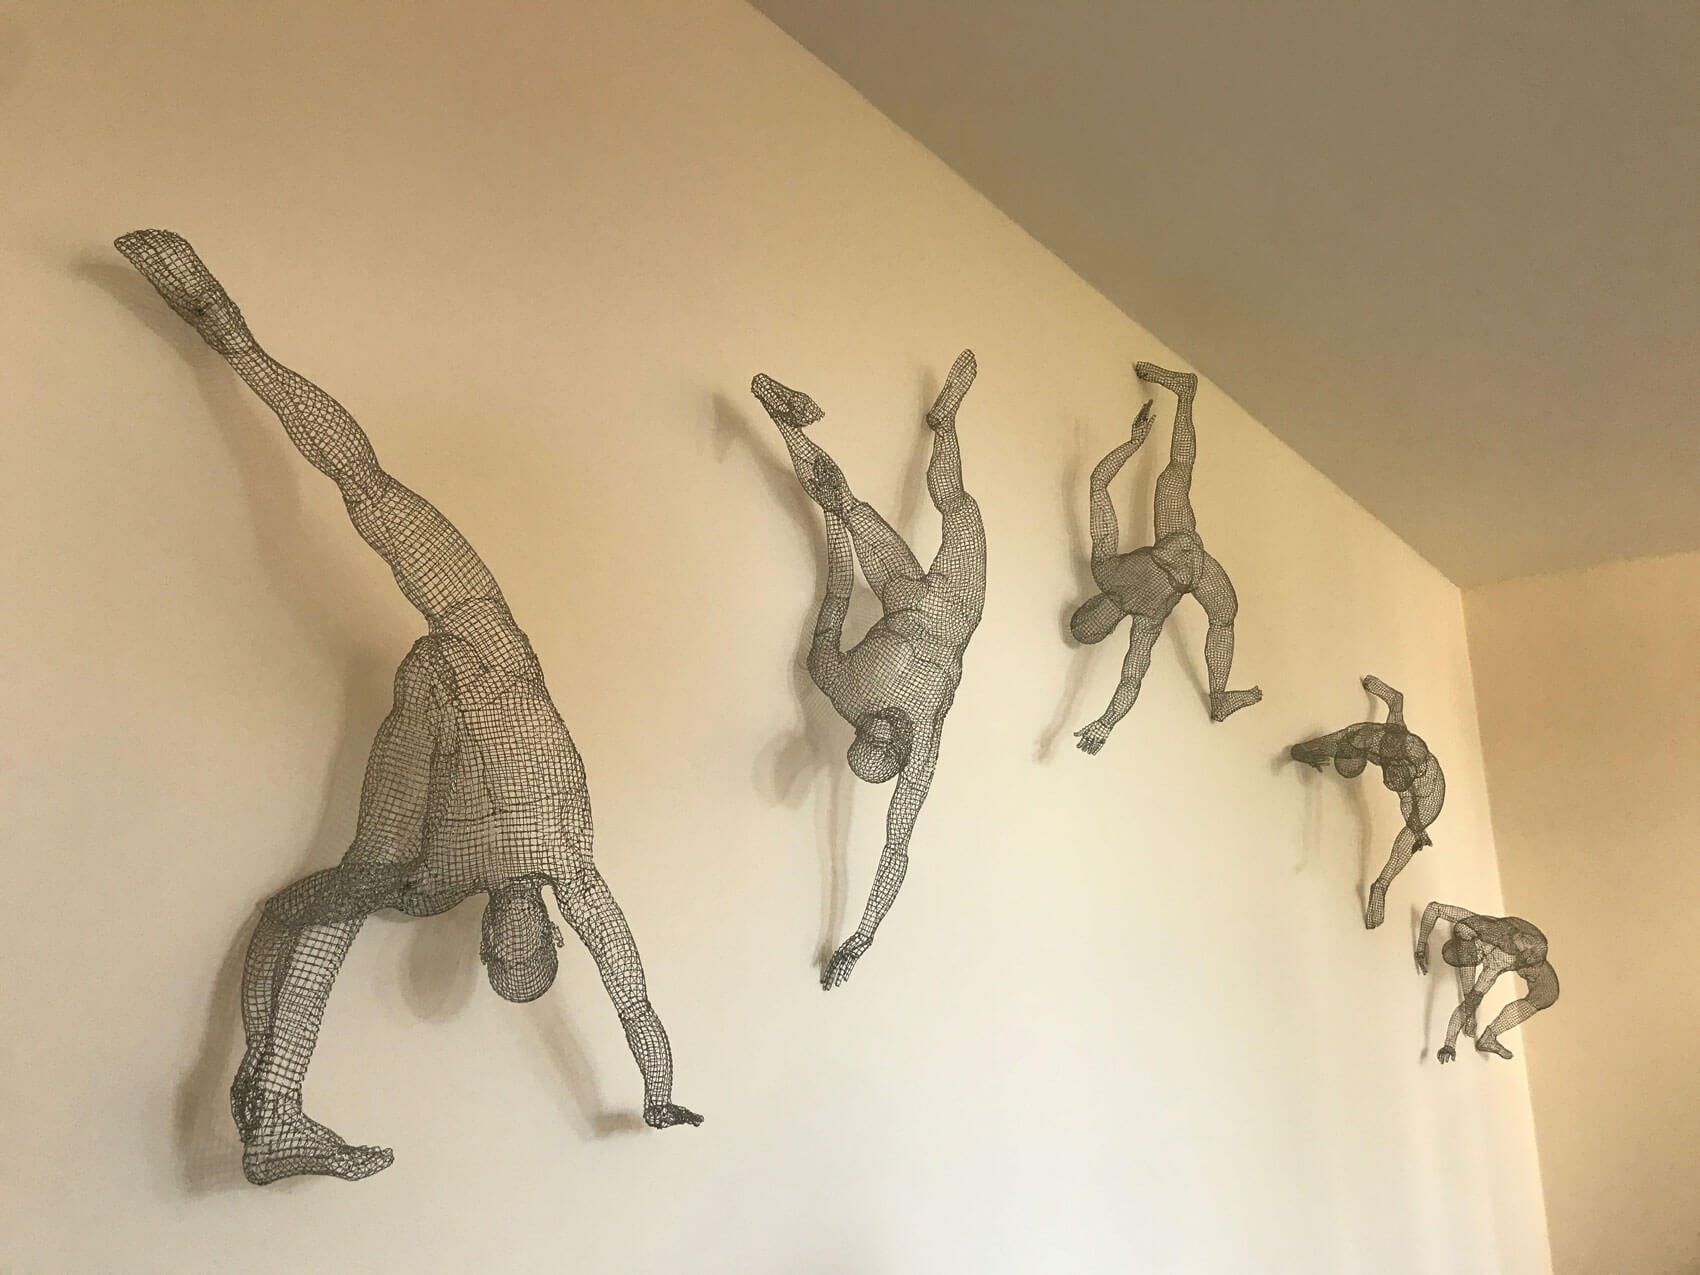 Michelle Castles Sculptures -Capoeira